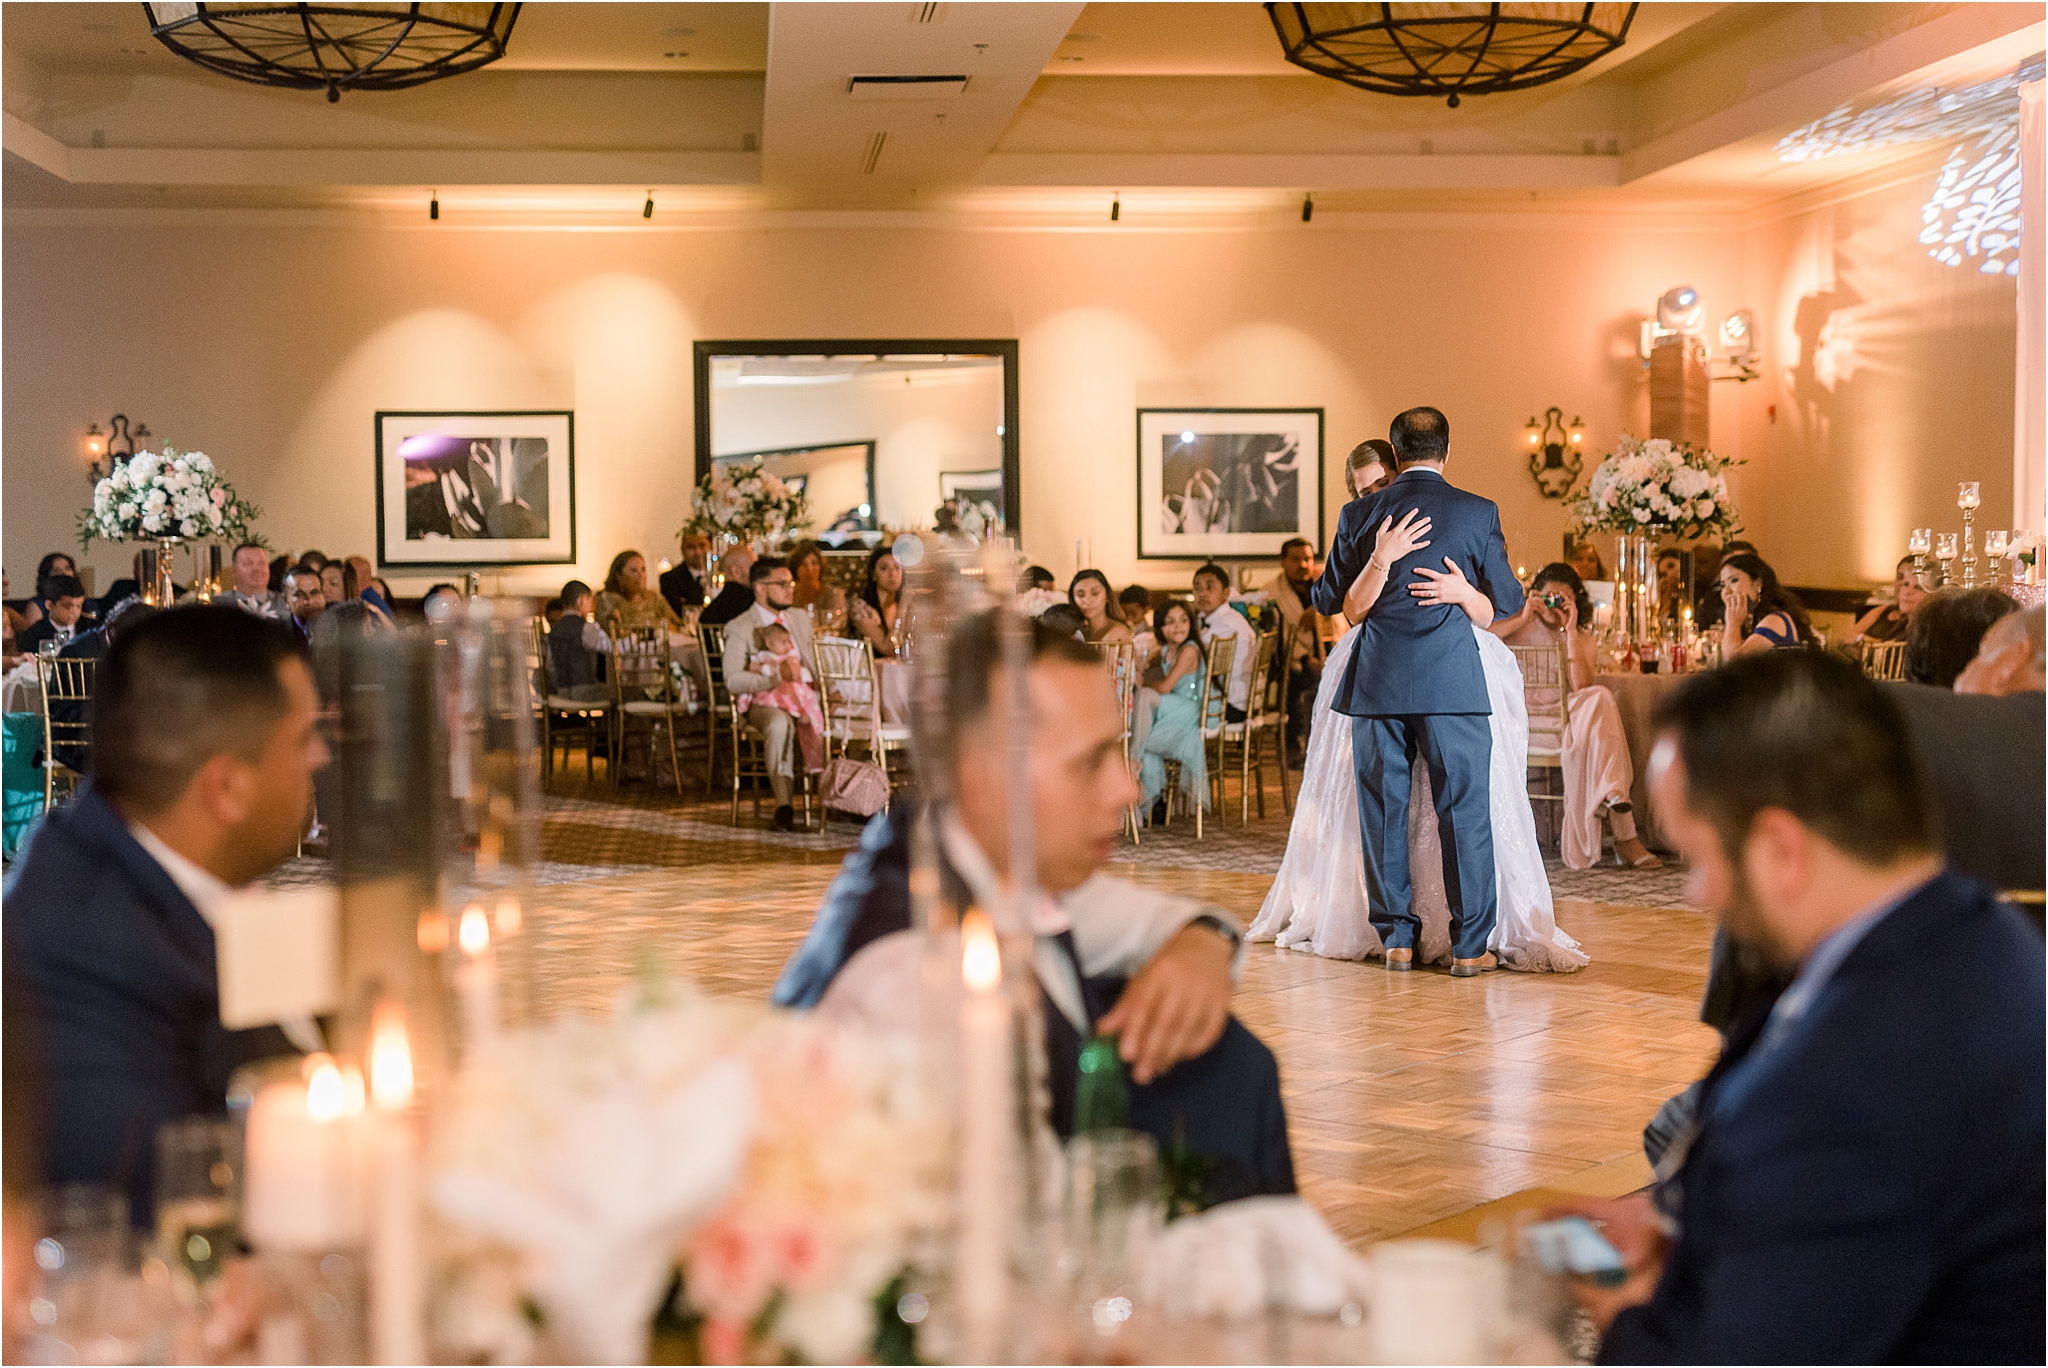 Omni Wedding Photographer | Tucson AZ | Ligia and Arturo reception photos | Tucson Wedding Photographer | West End Photography